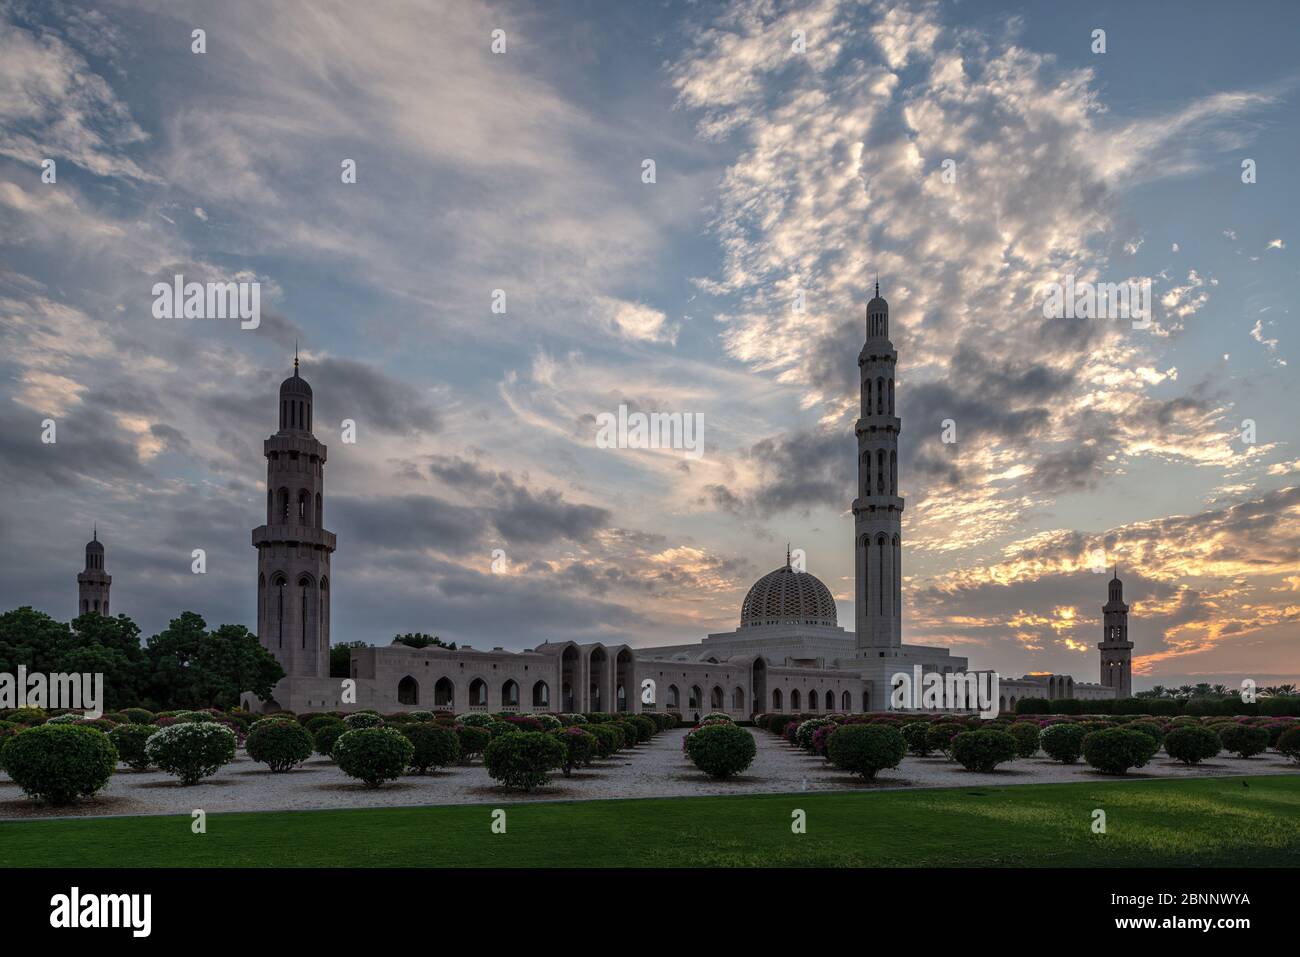 Moschee, Gebetshaus, Kuppel, Minarett, Park, Garten, Dämmerung, Abendhimmel, Wolken, Wolkenlandschaft, Bäume Stockfoto